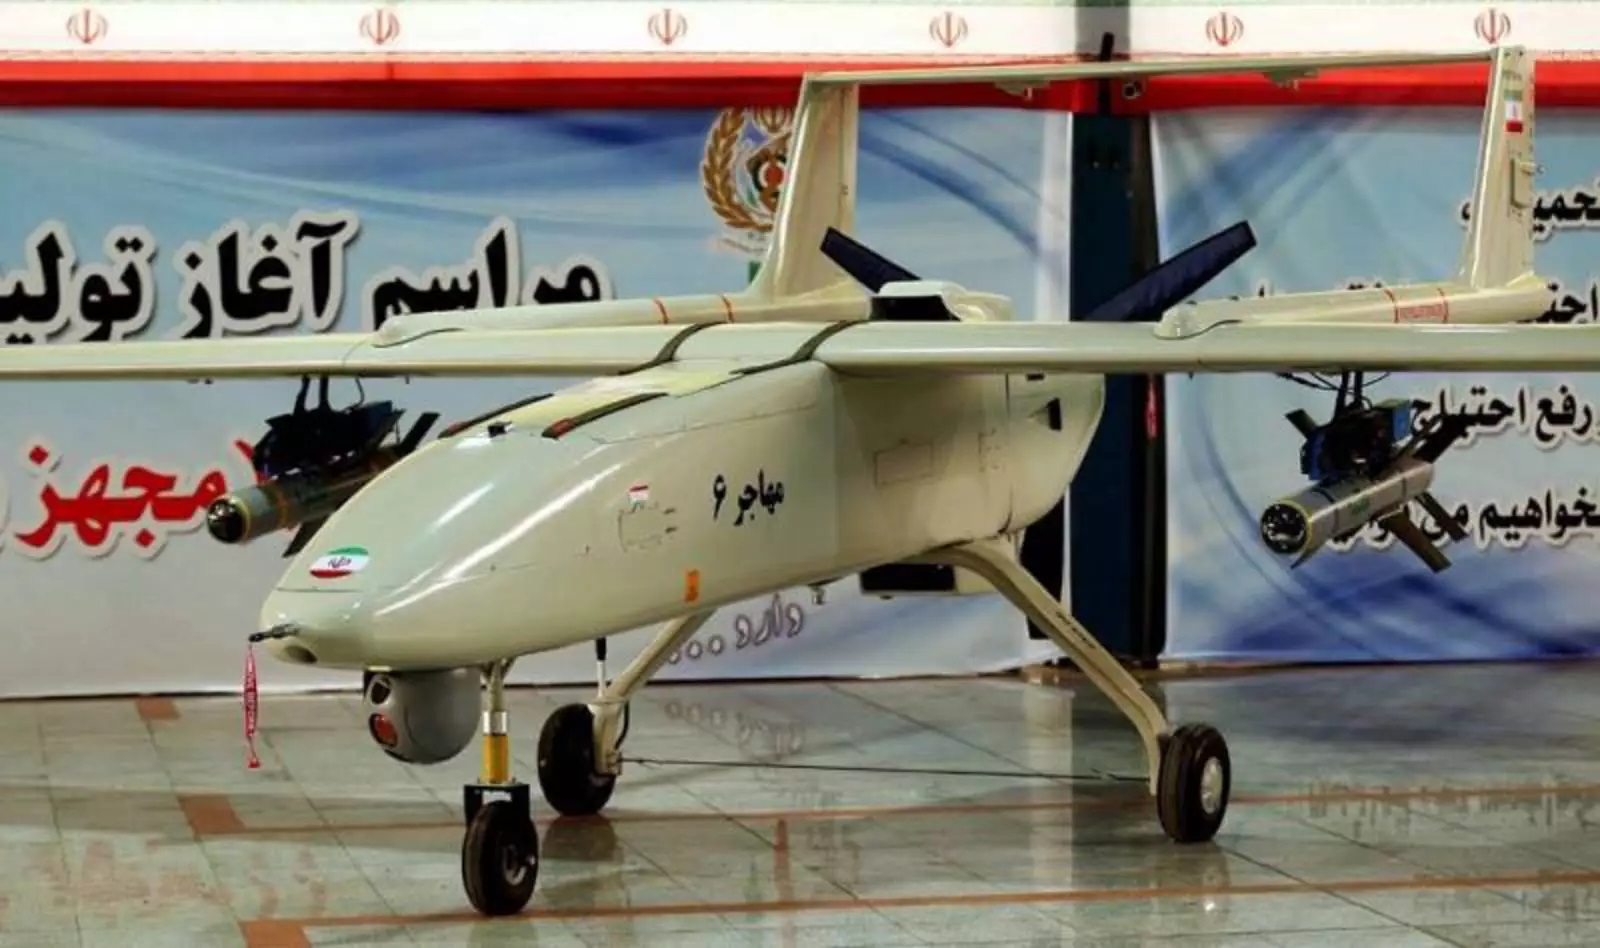 L'Iran pourrait envoyer davantage de drones kamikazes à la Russie - Secrétaire d'État américain